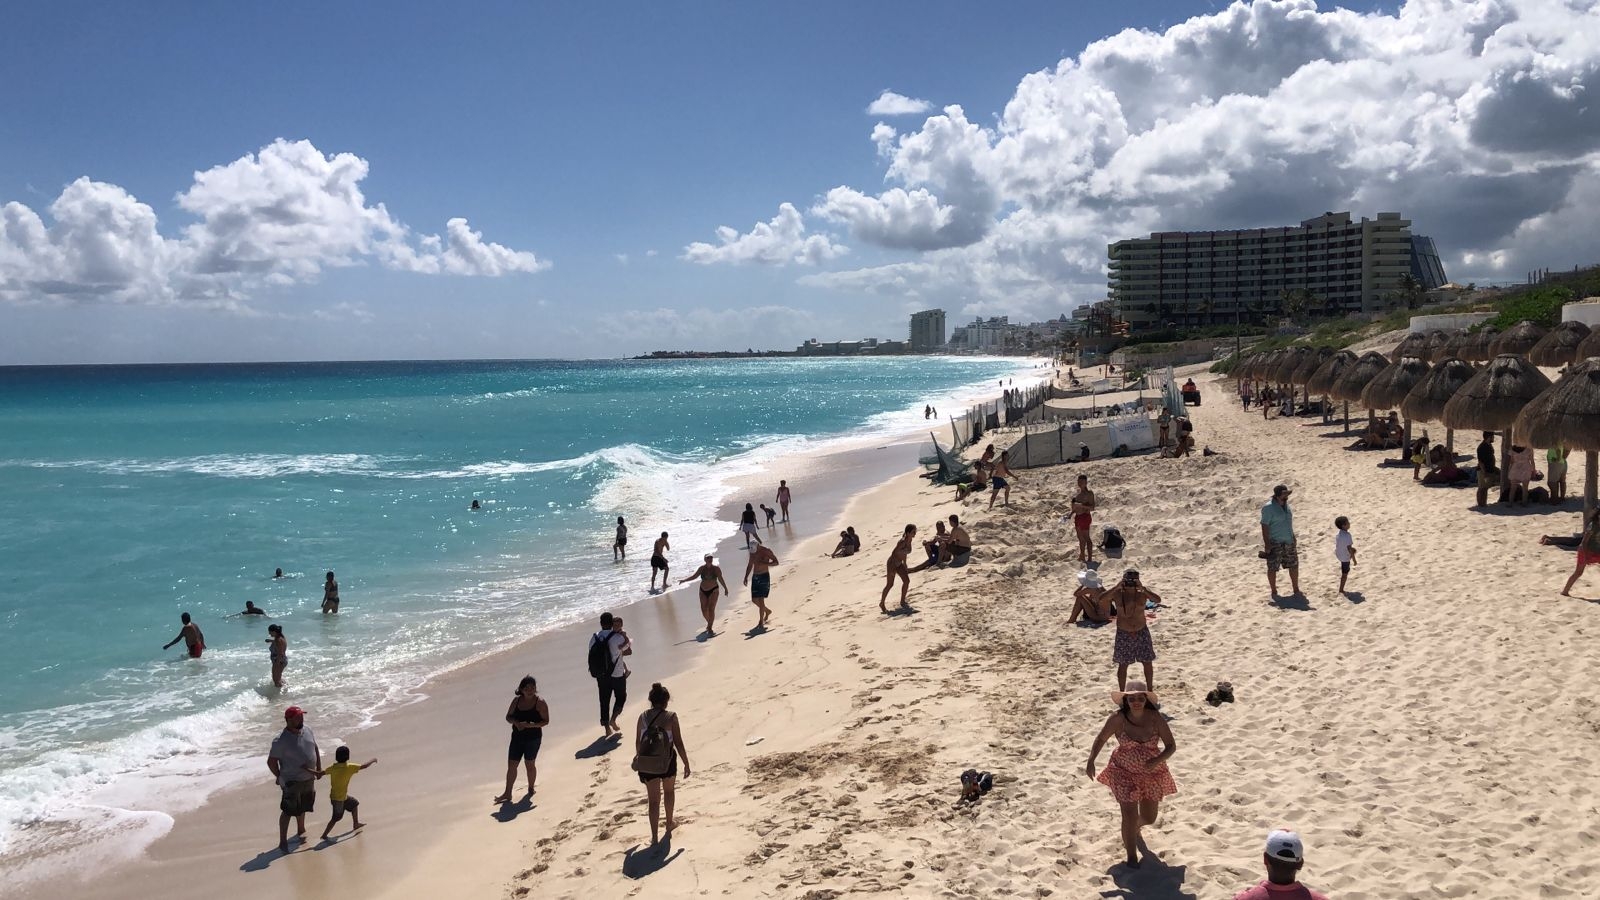 Clima en Cancún: Se espera cielo nublado la mayor parte del día